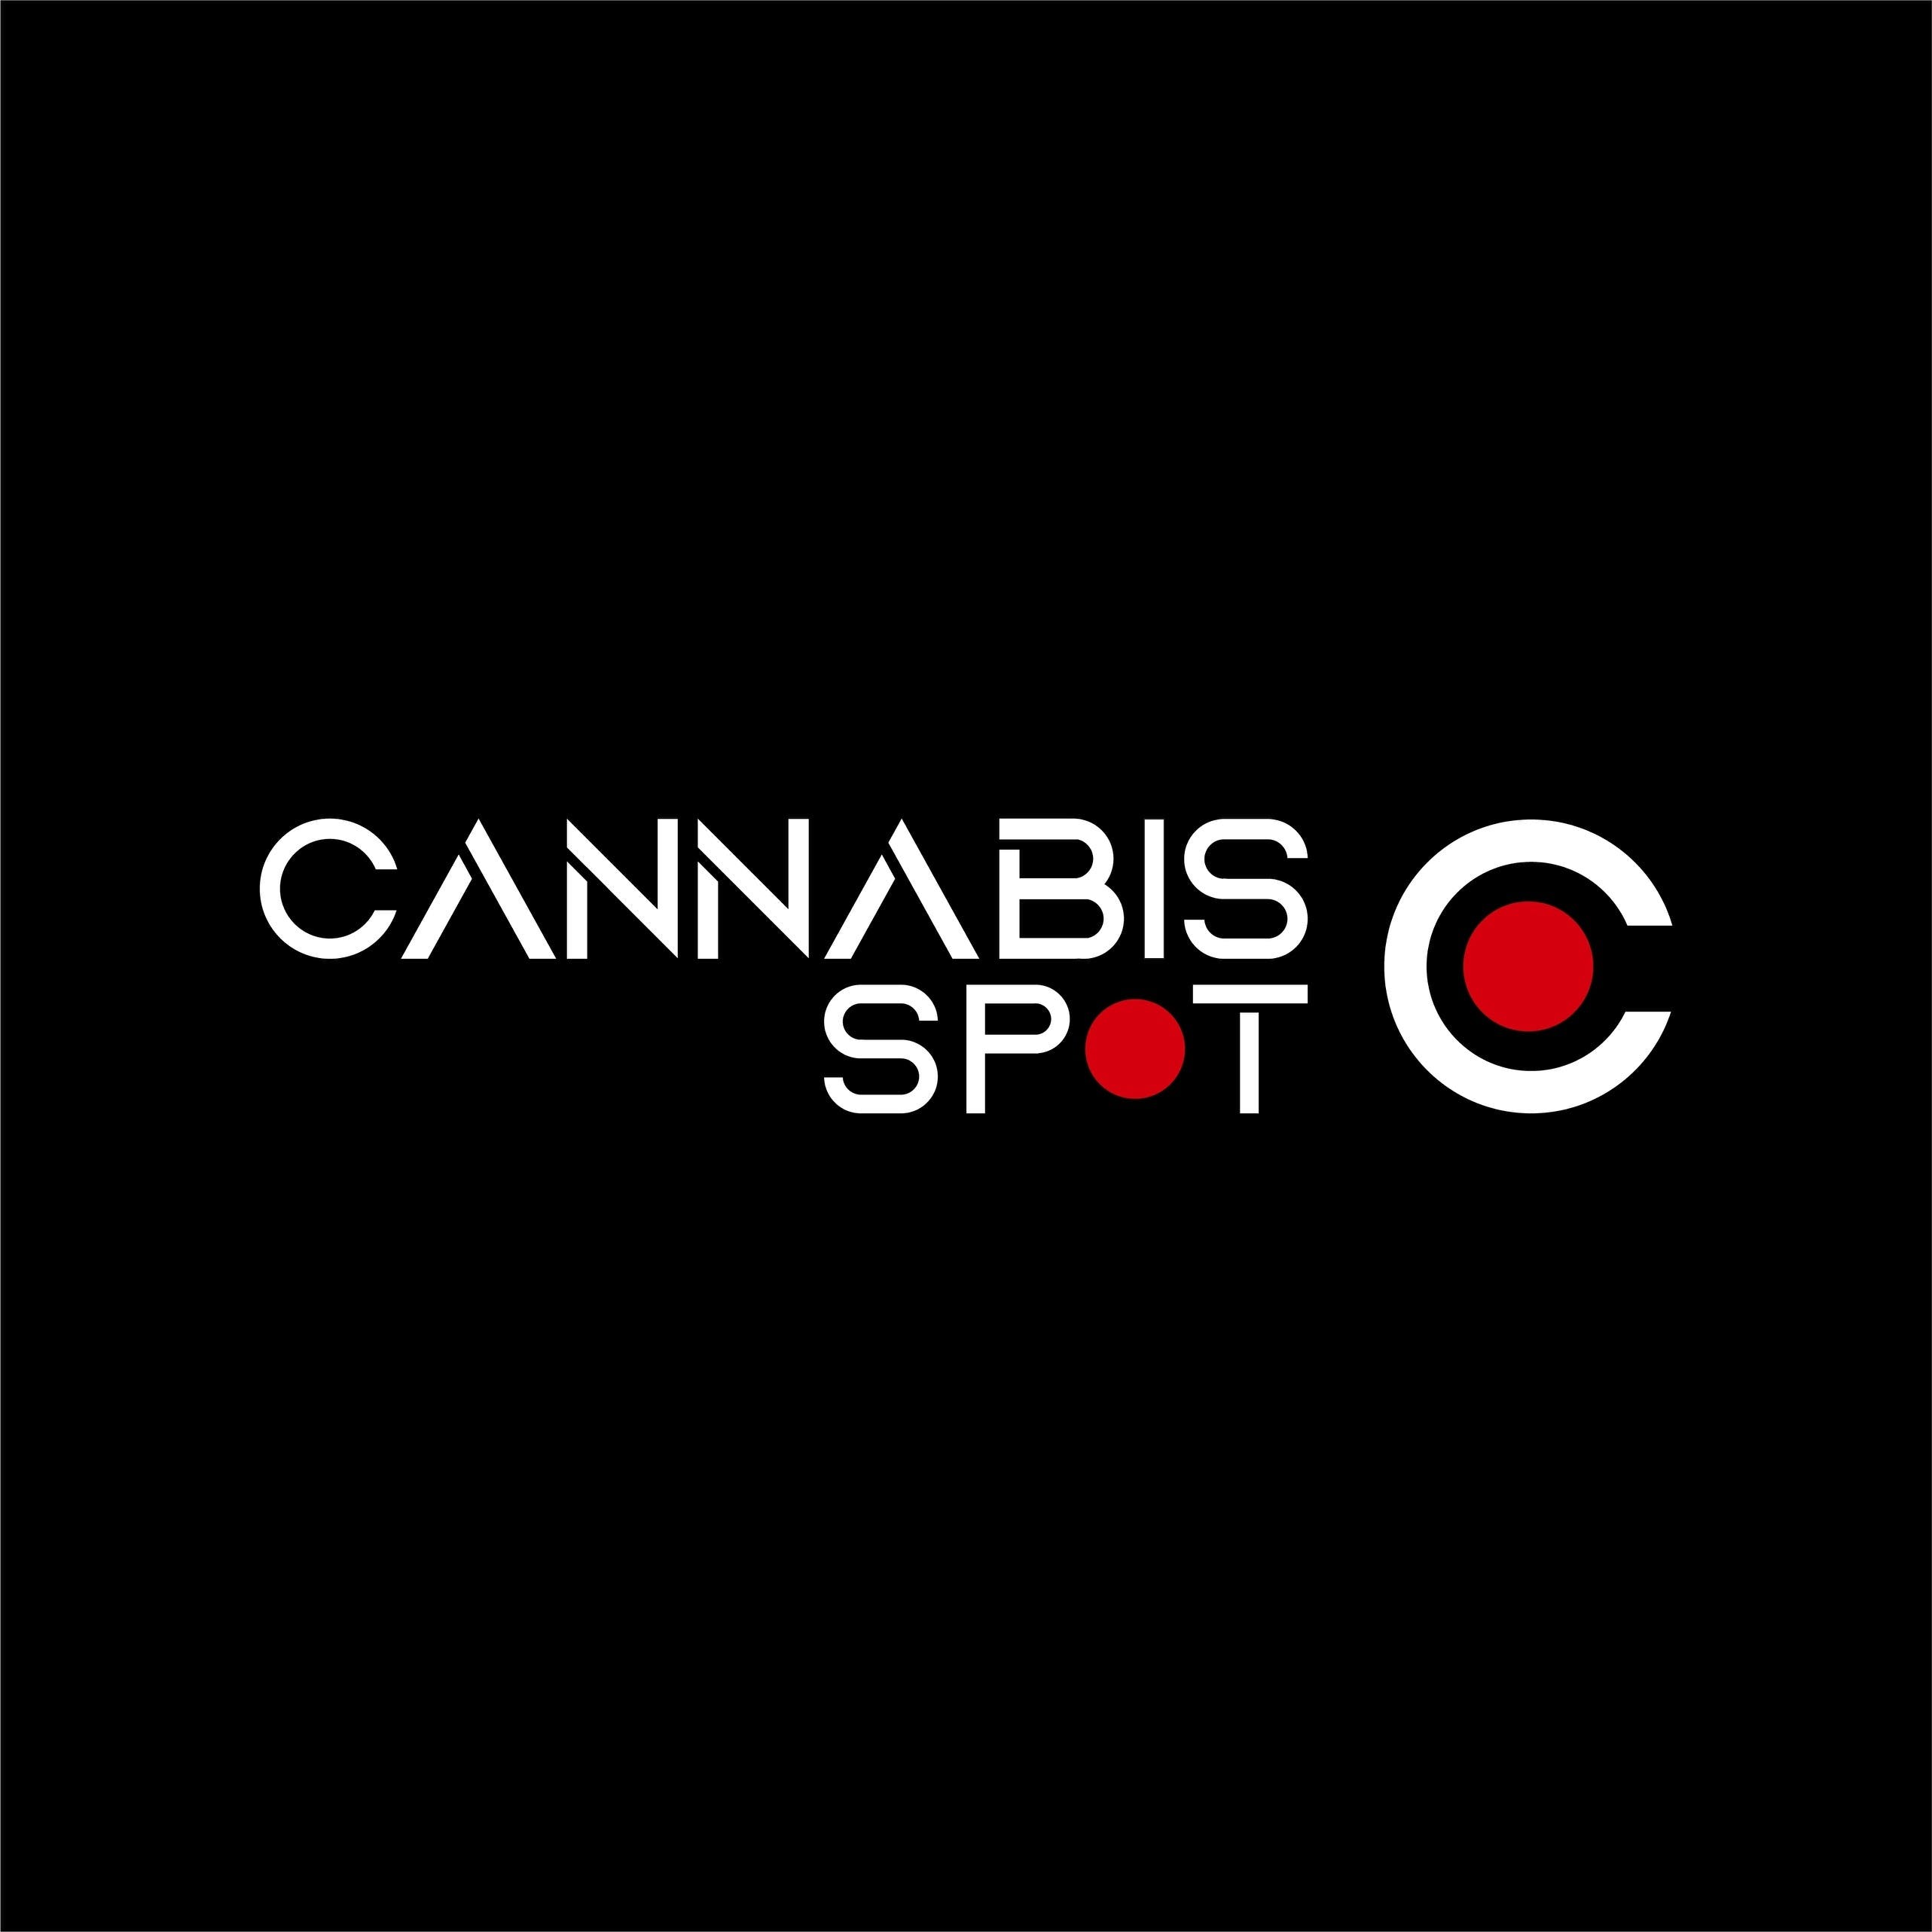 Cannabis Store Cannabis Spot - 1